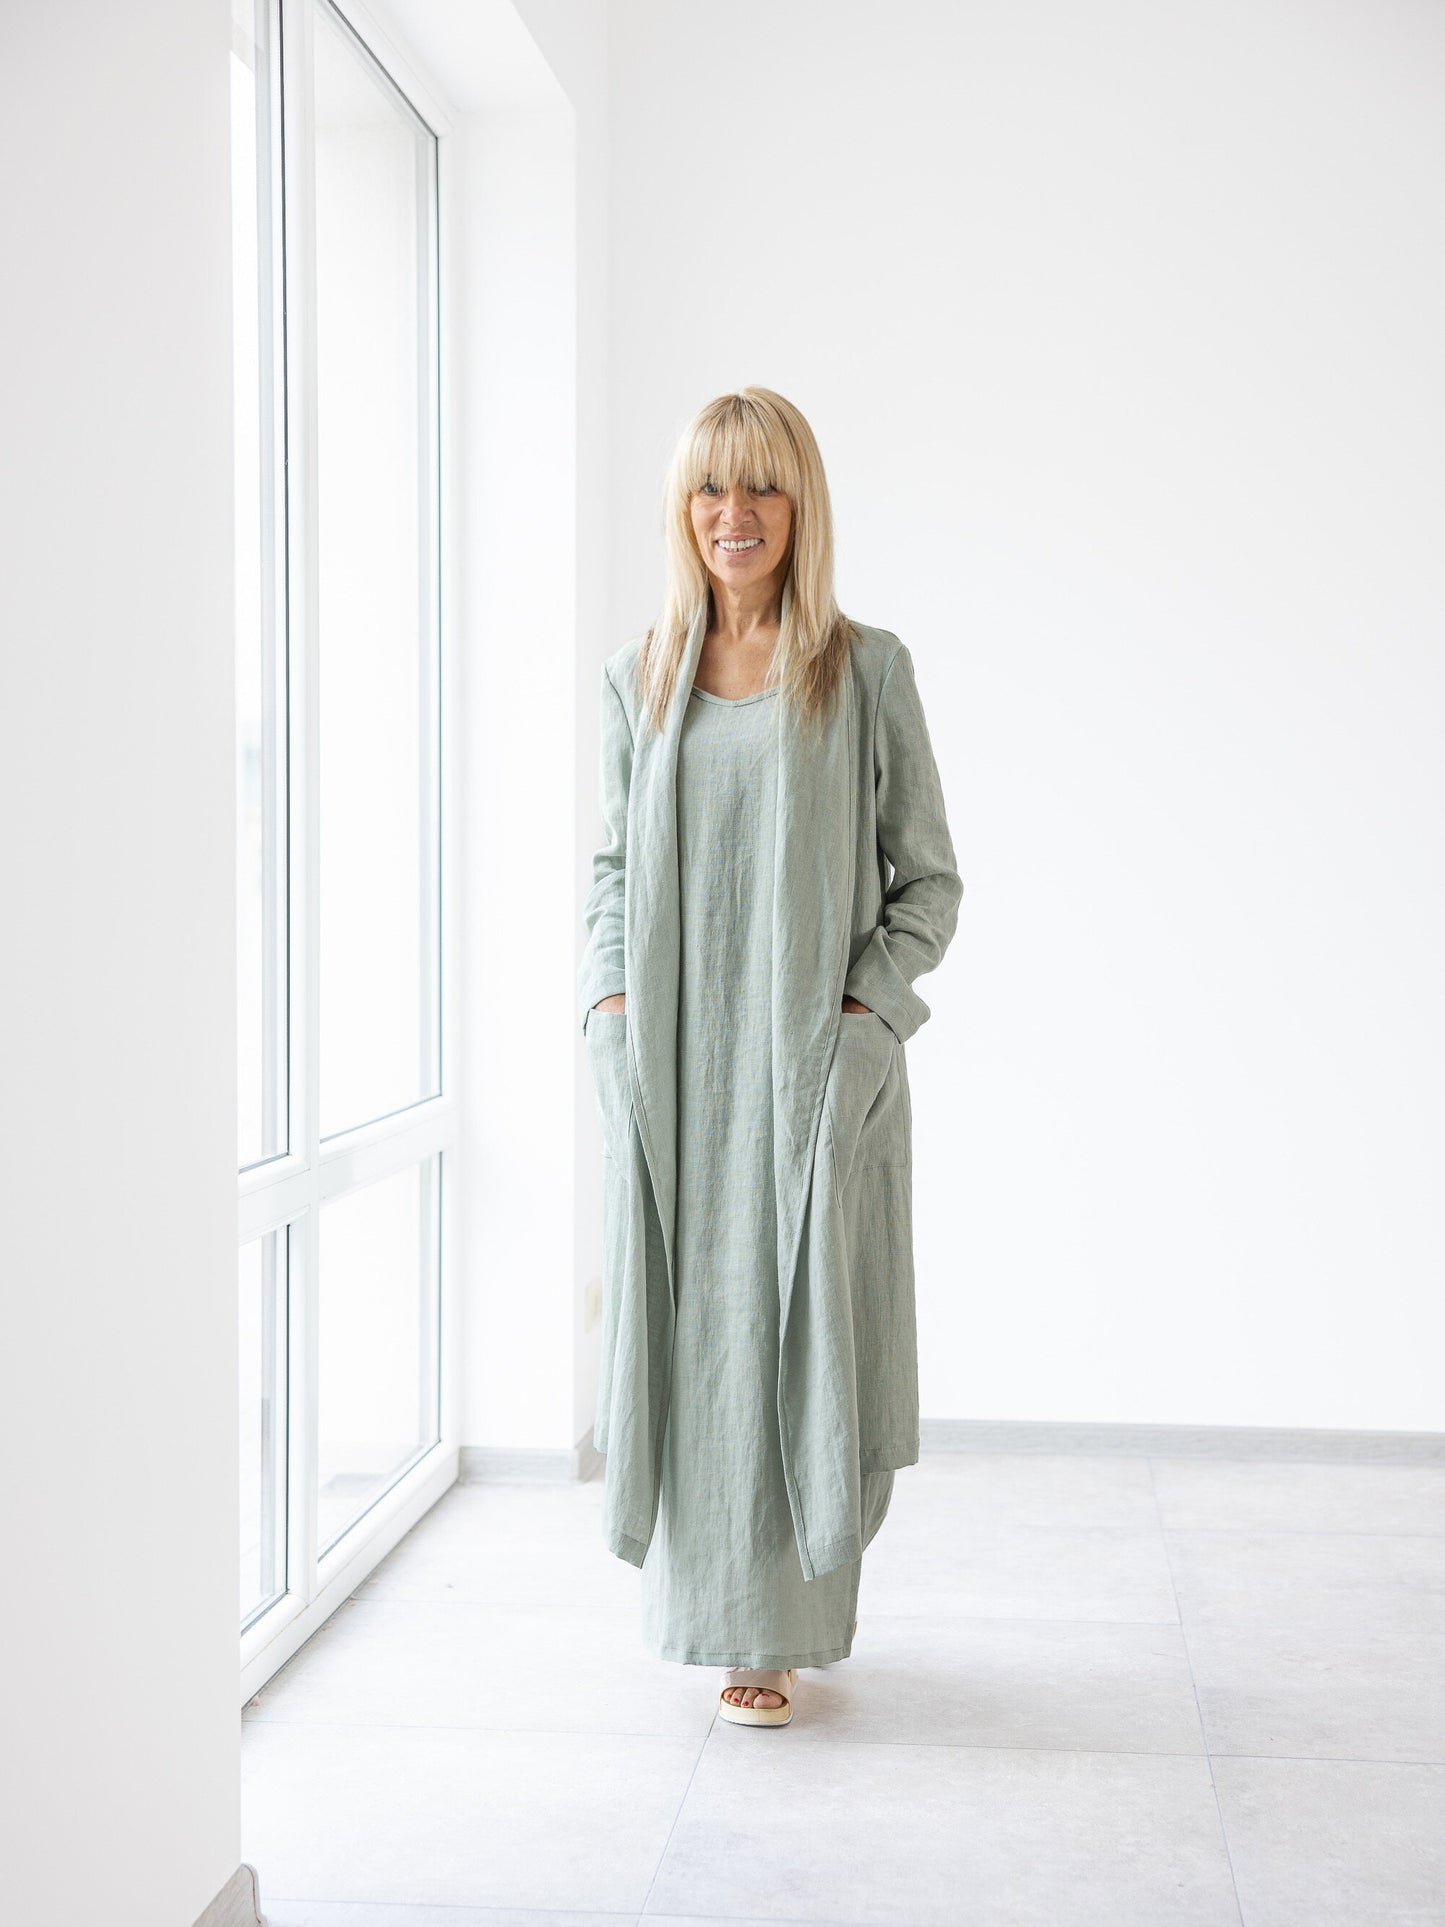 Women's Long Linen Cardigan / Handmade, High-Quality Linen